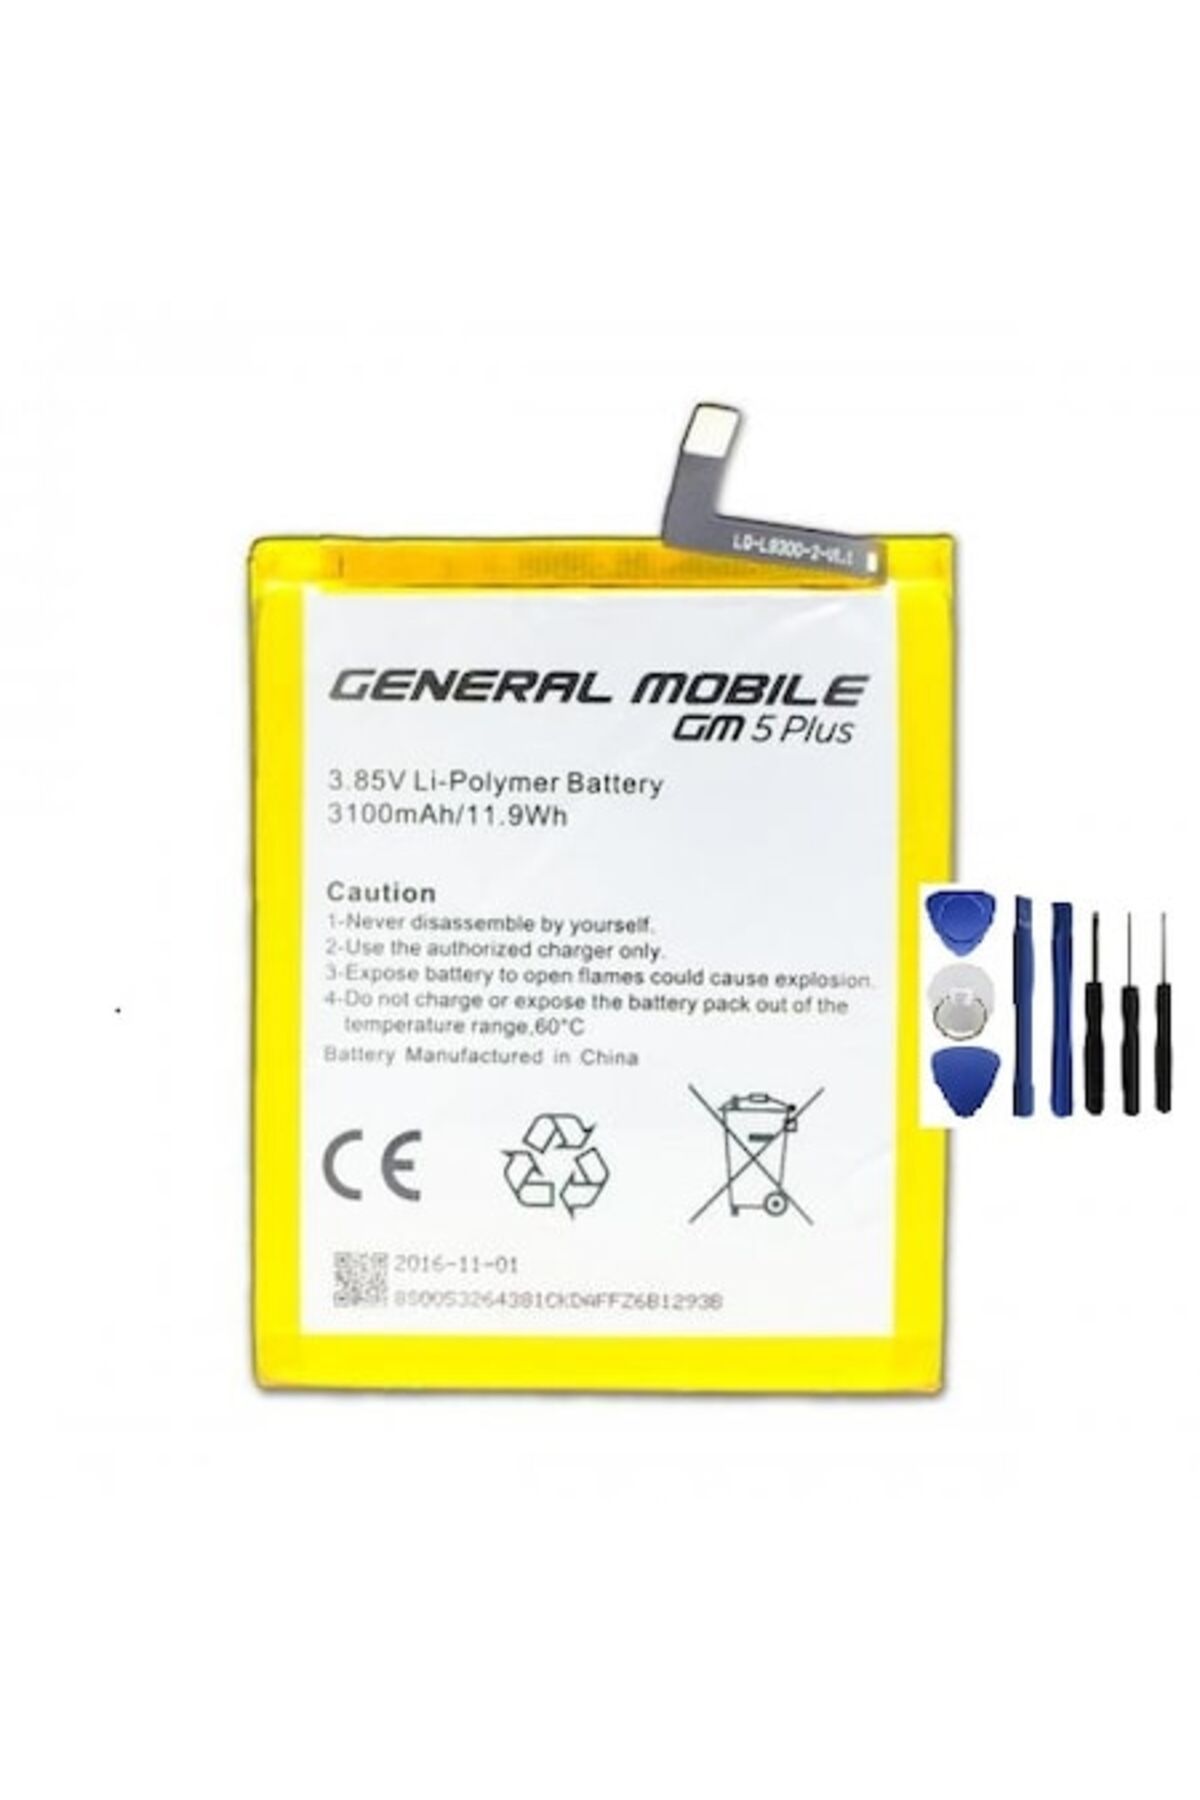 Basriko VORABELA General Mobile Gm5 Plus Pil Batarya ve Tamir Seti